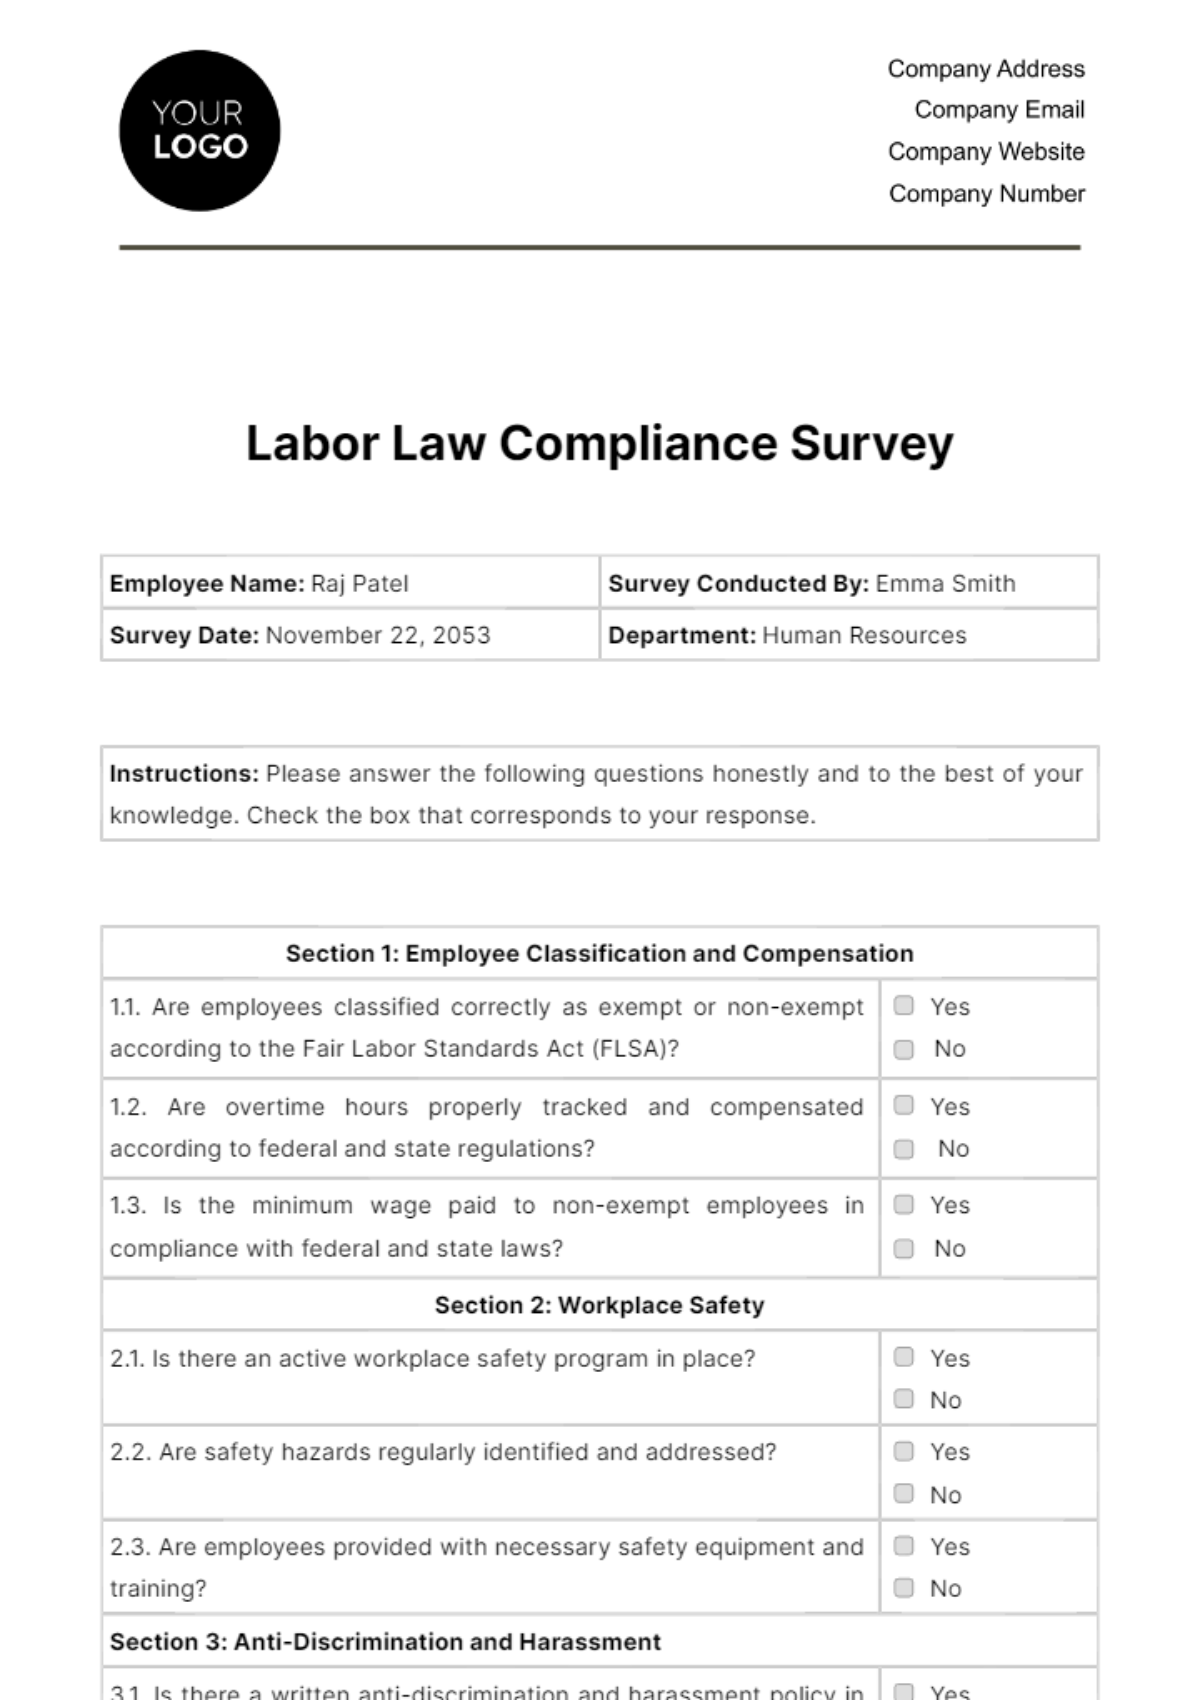 Labor Law Compliance Survey HR Template